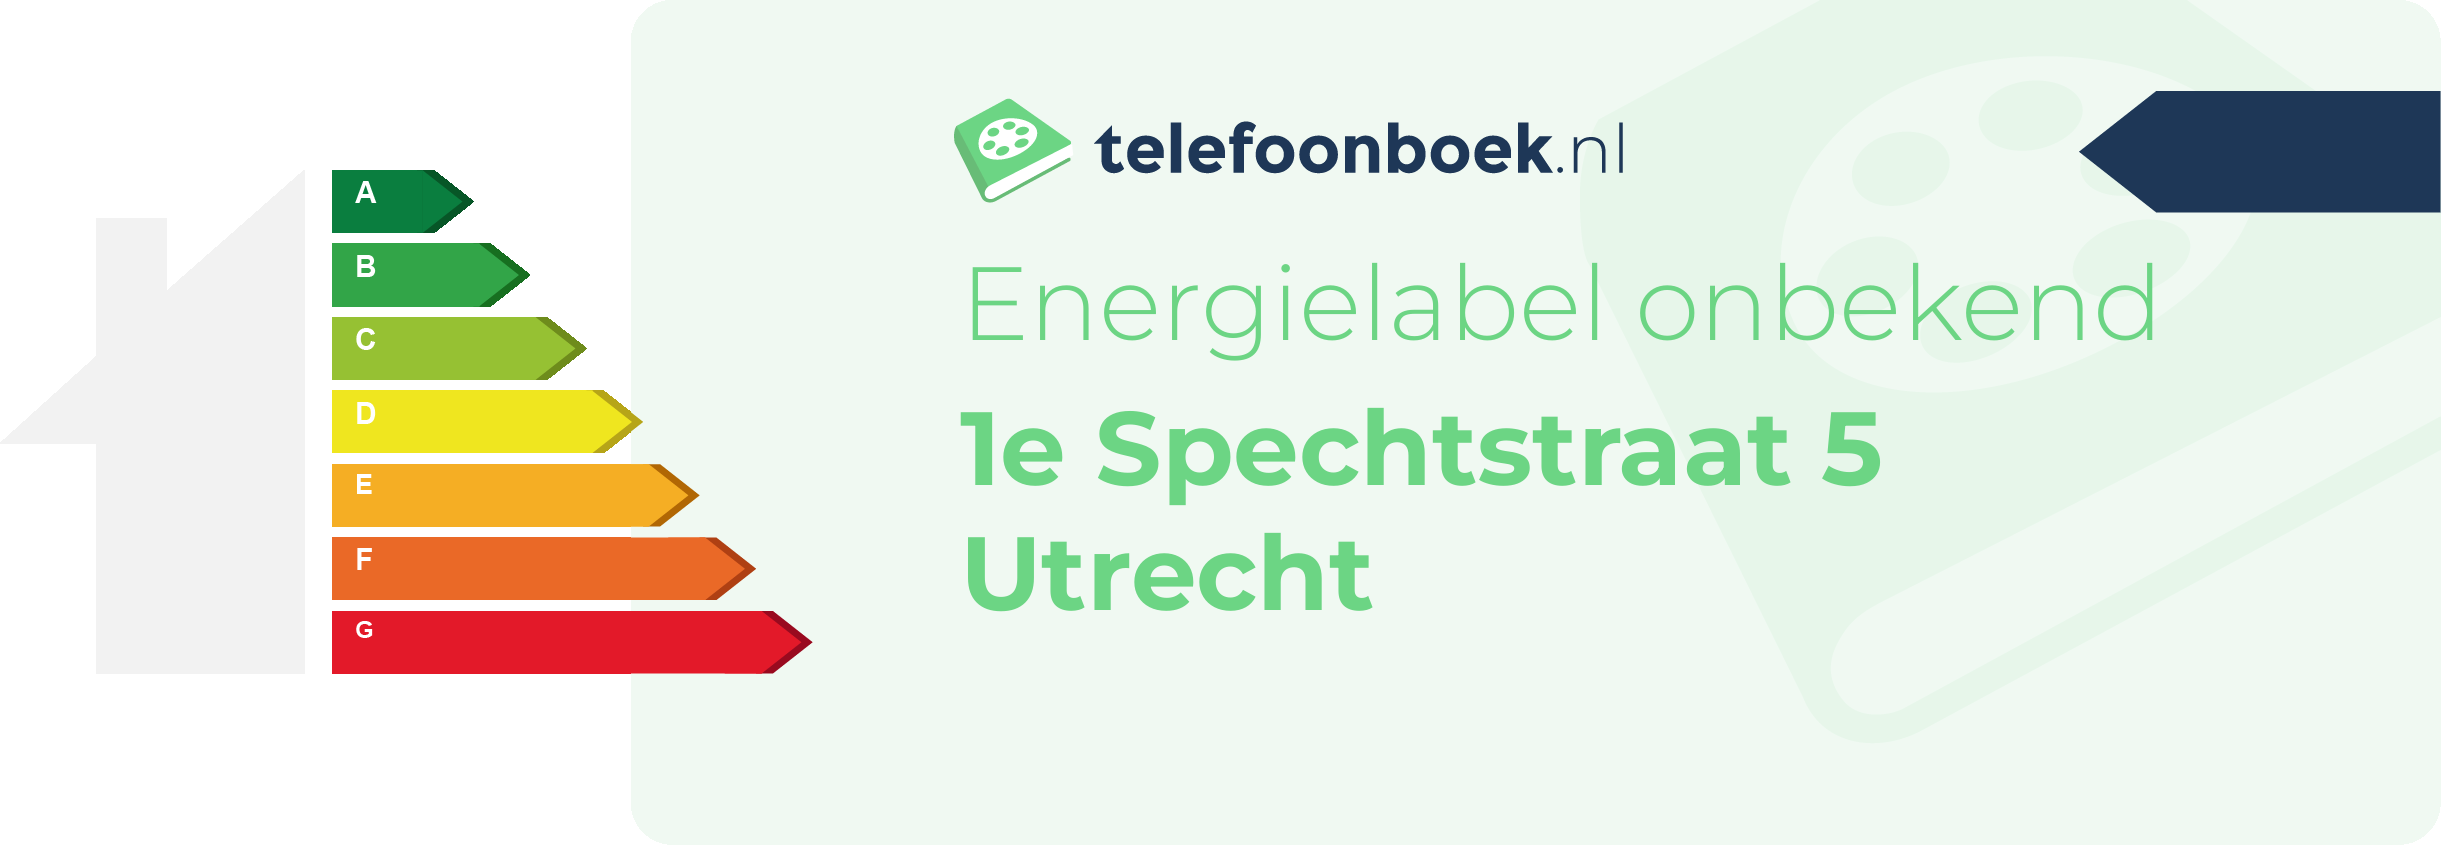 Energielabel 1e Spechtstraat 5 Utrecht